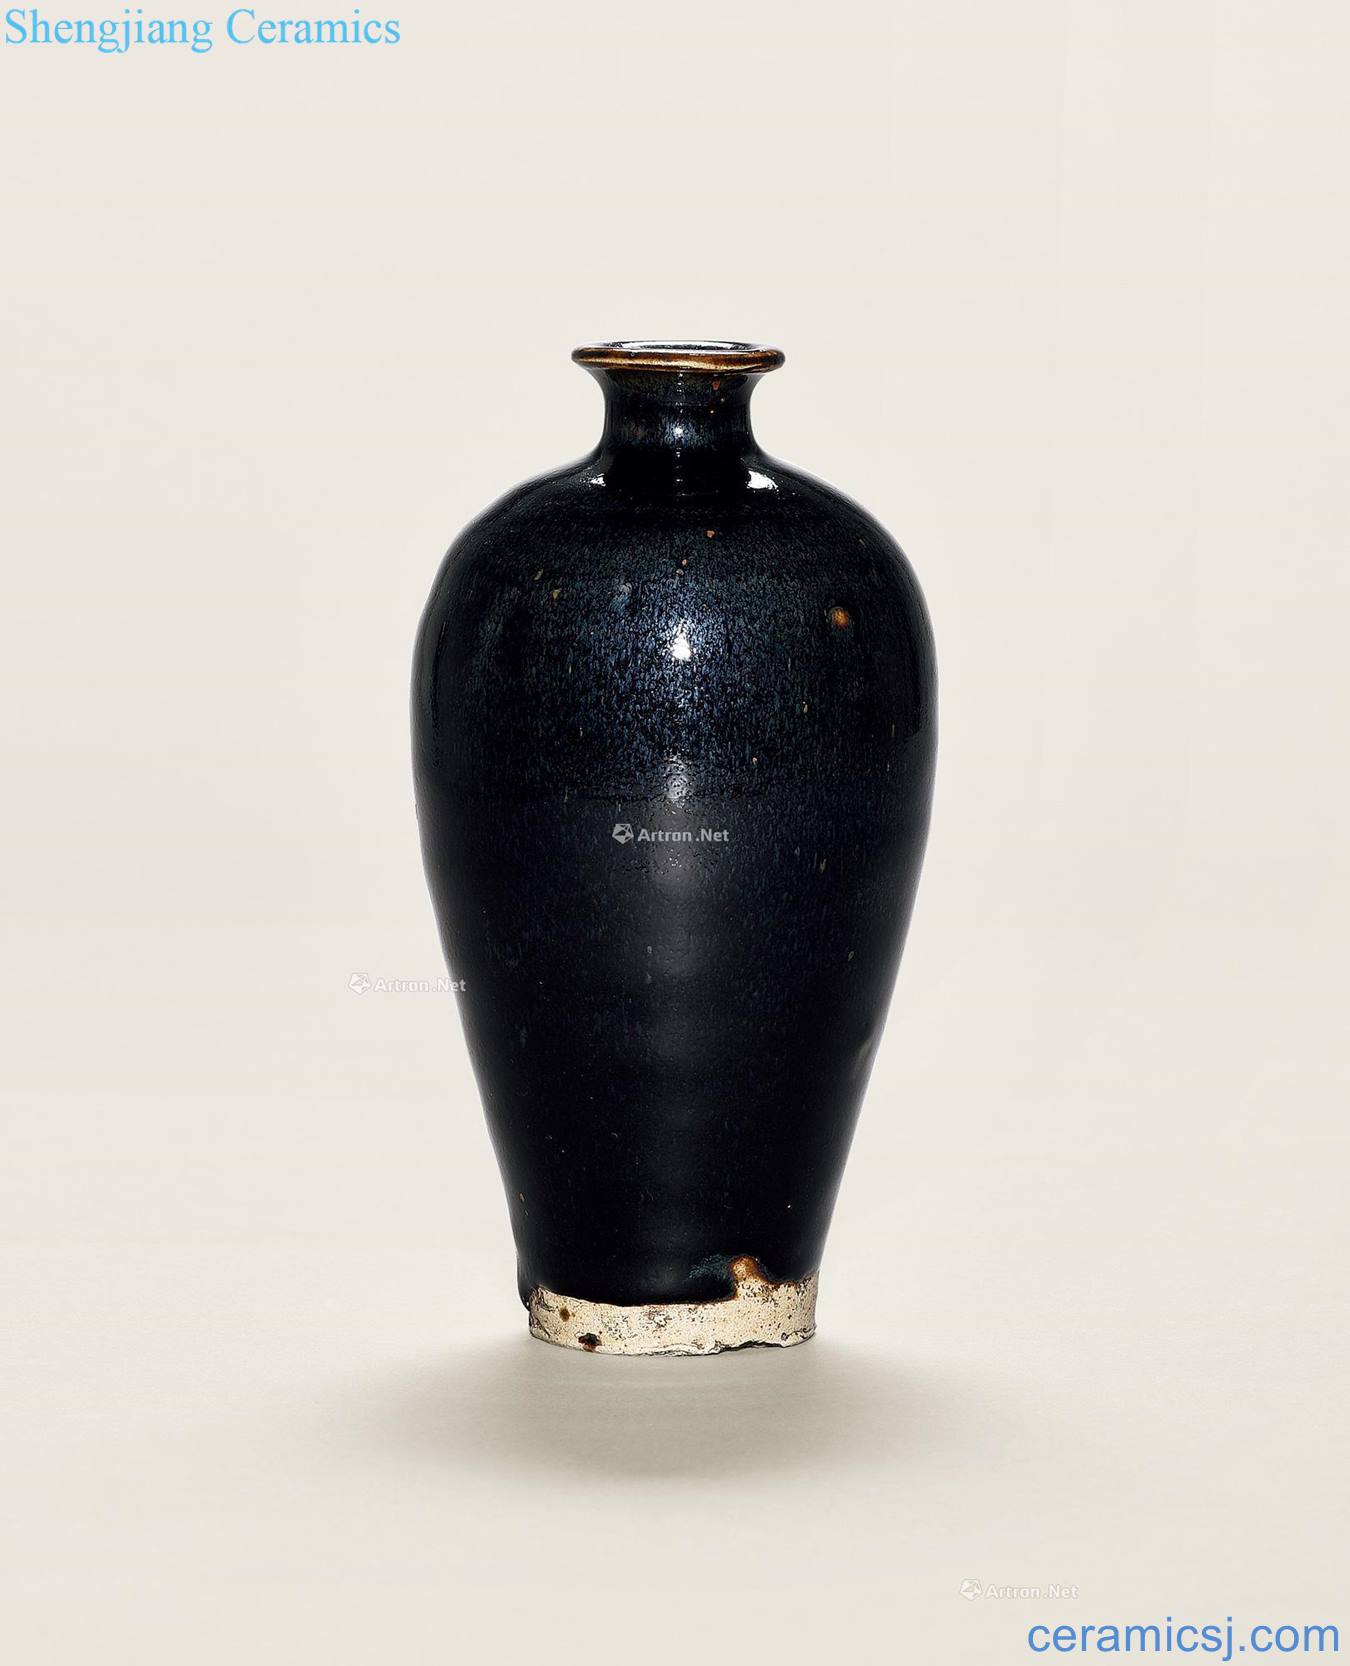 Song magnetic state kiln black glaze plum bottle